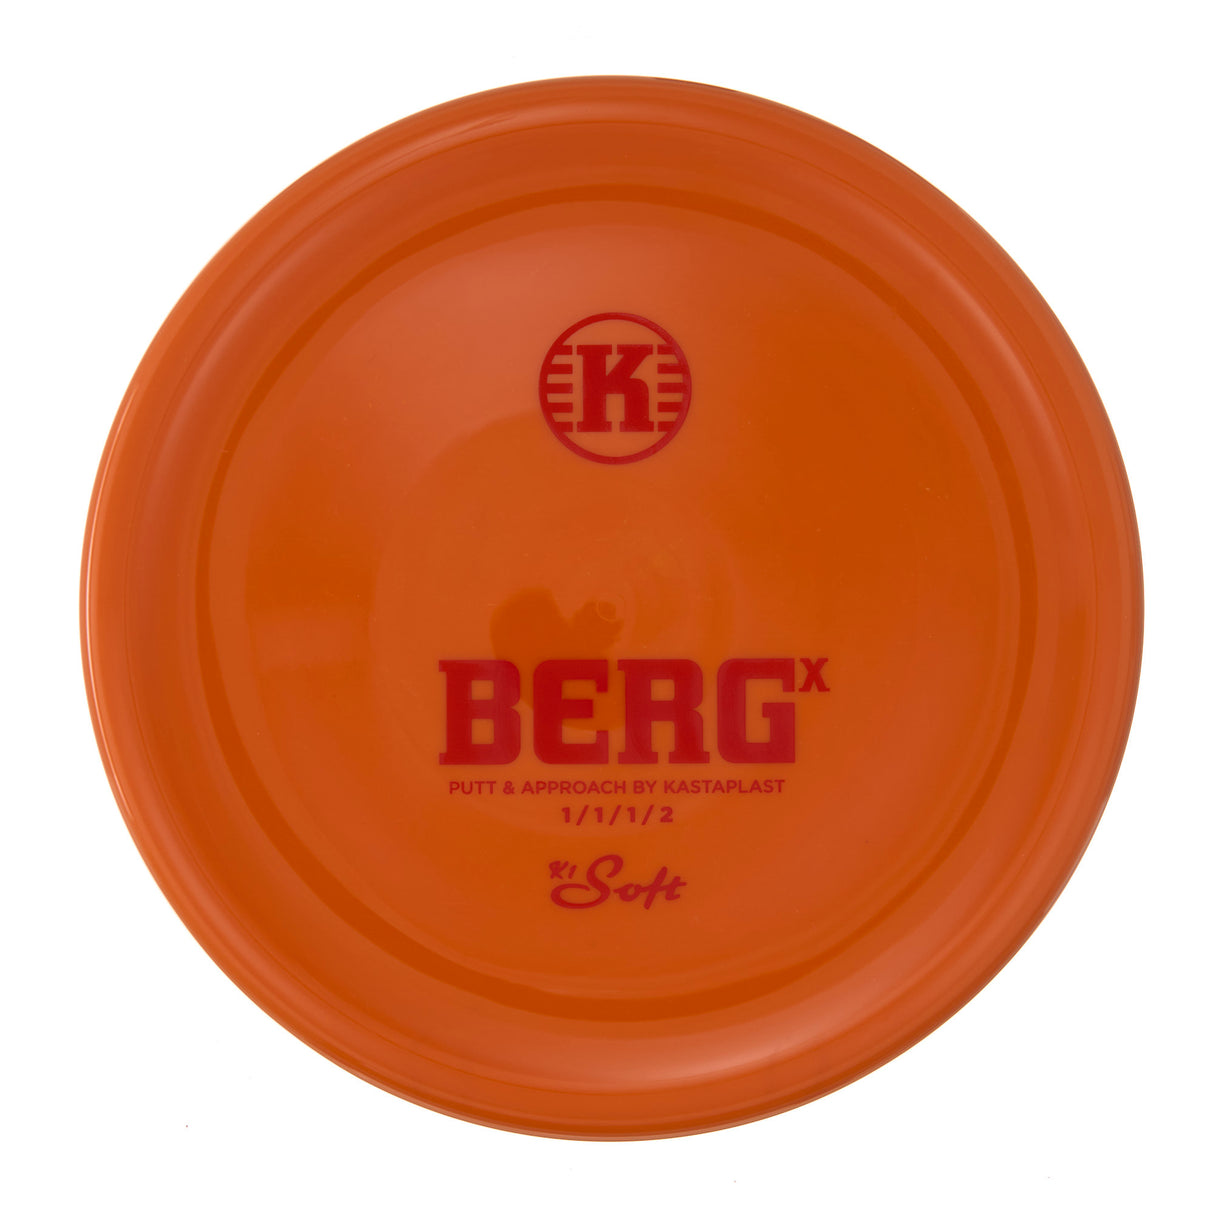 Kastaplast Berg X - K1 Soft 174g | Style 0001